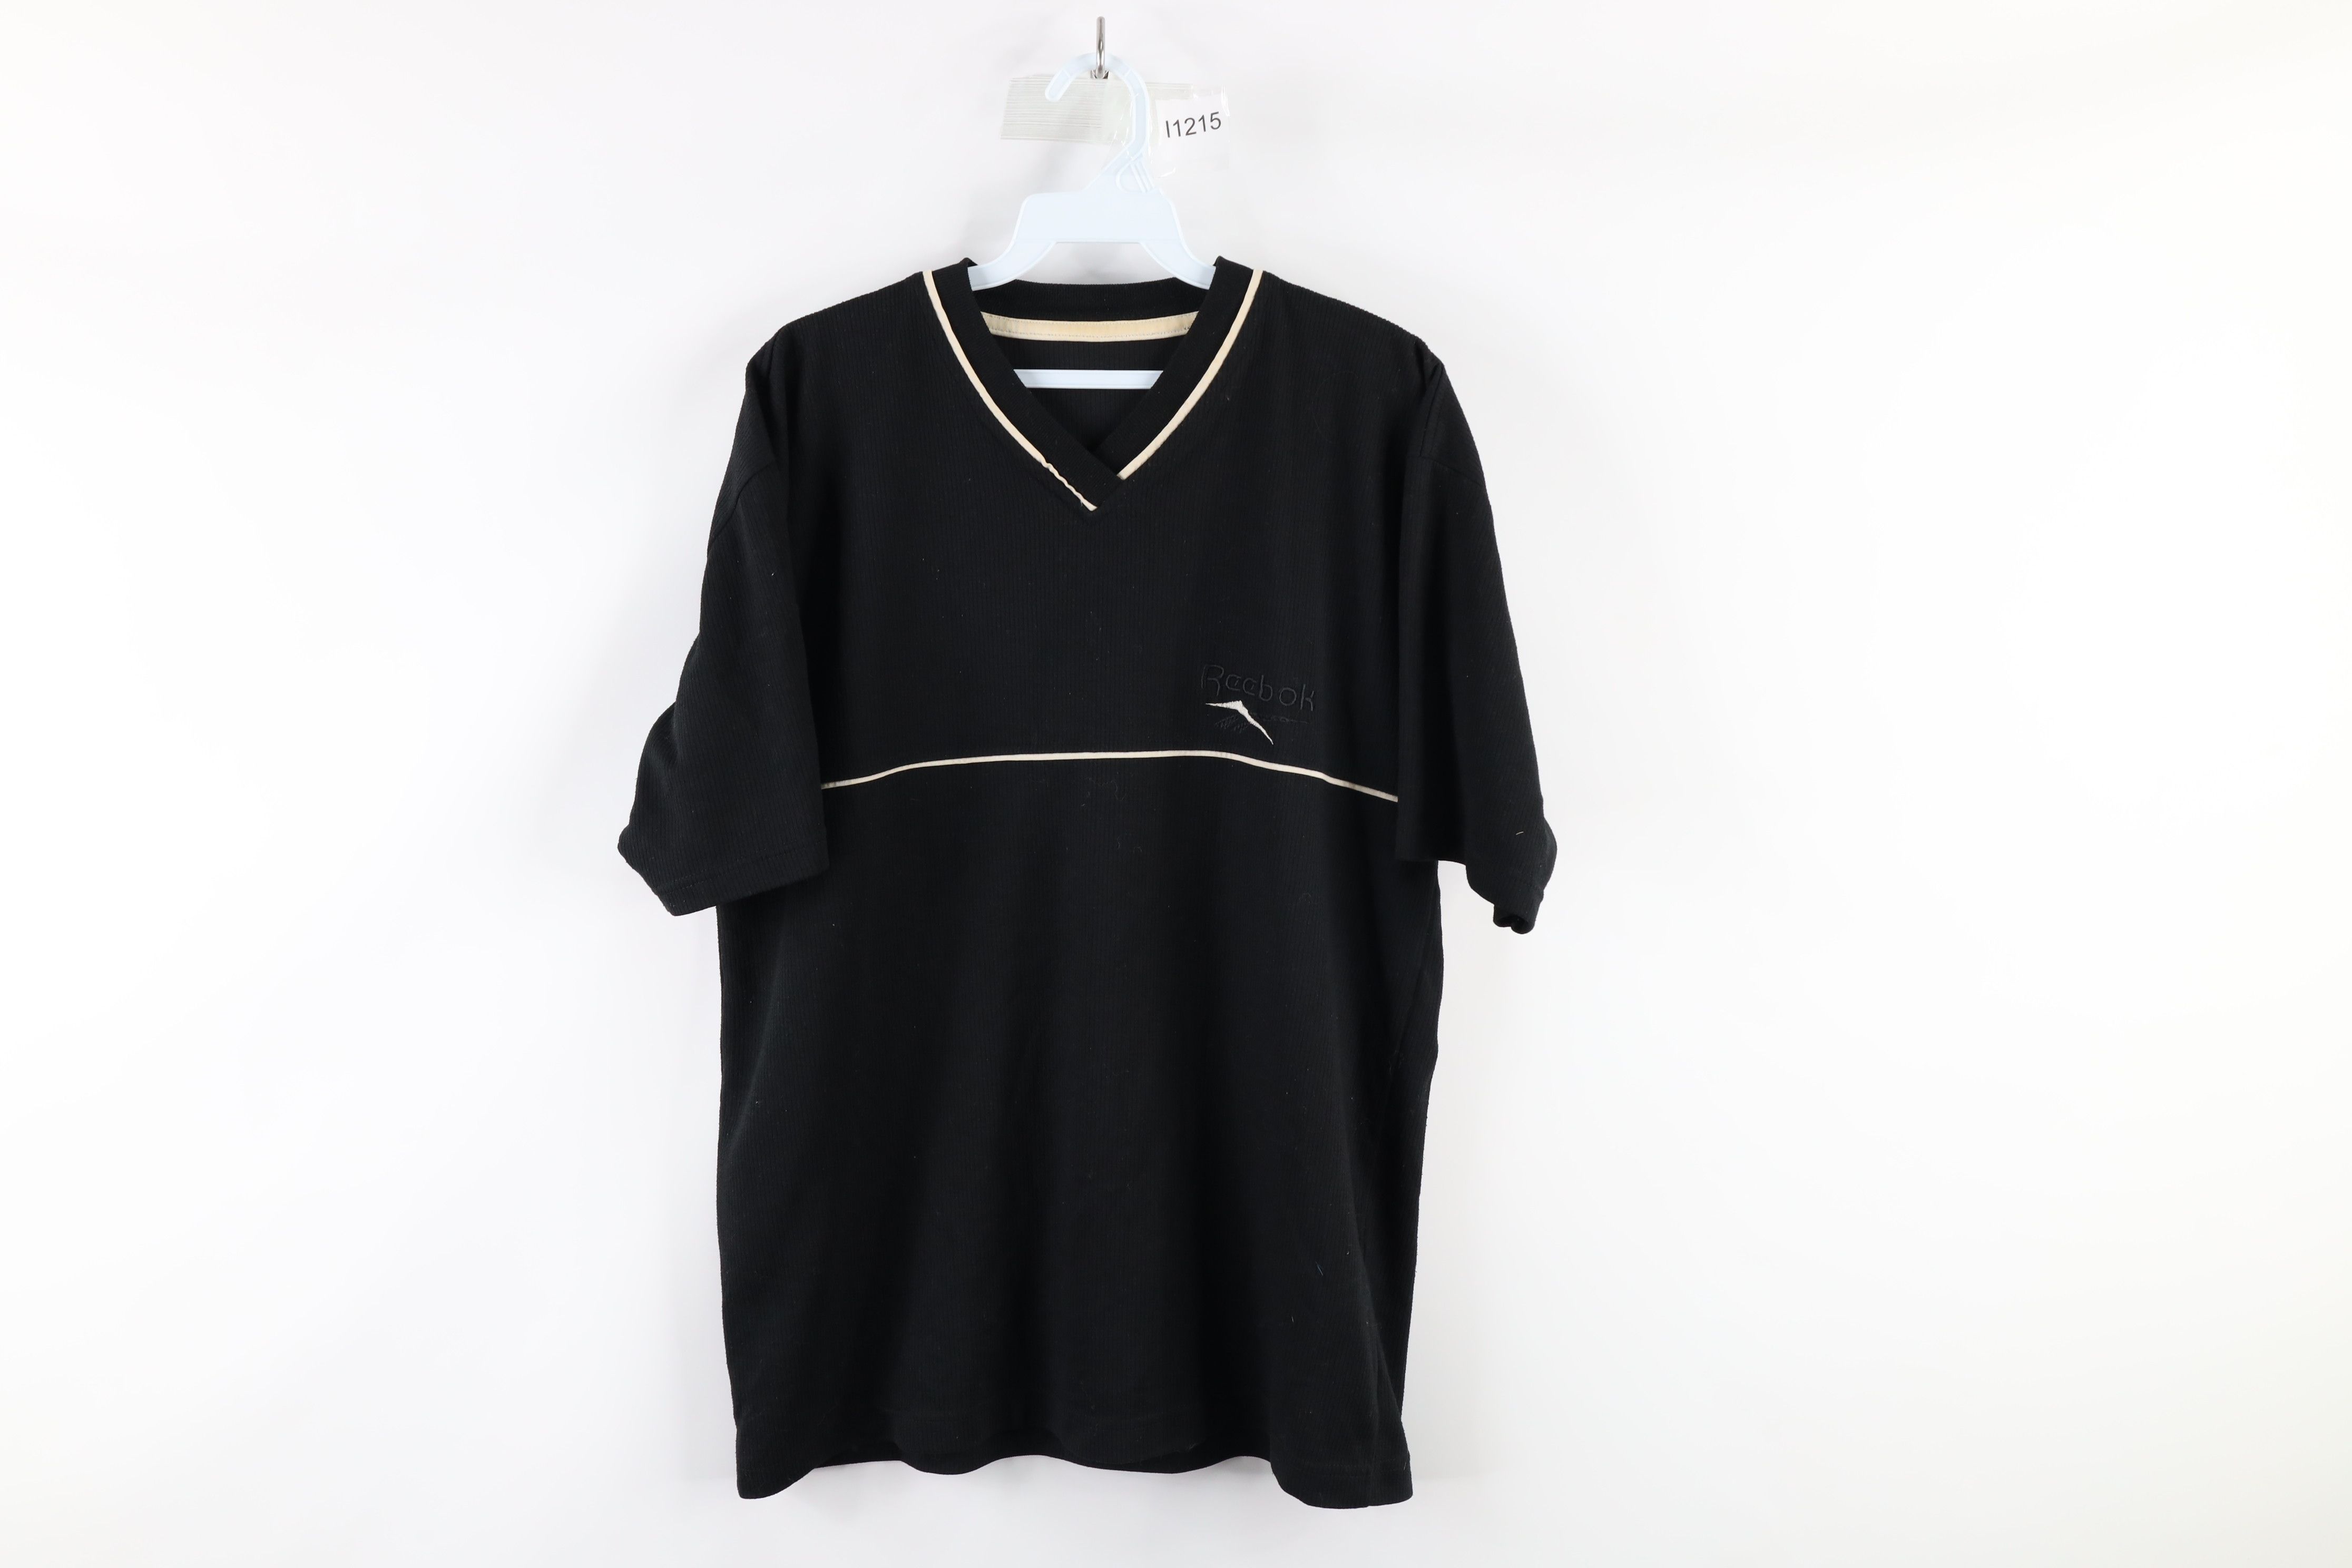 Vintage Vintage 90s Reebok Ribbed Spell Out V-Neck T-Shirt Black Size US L / EU 52-54 / 3 - 1 Preview